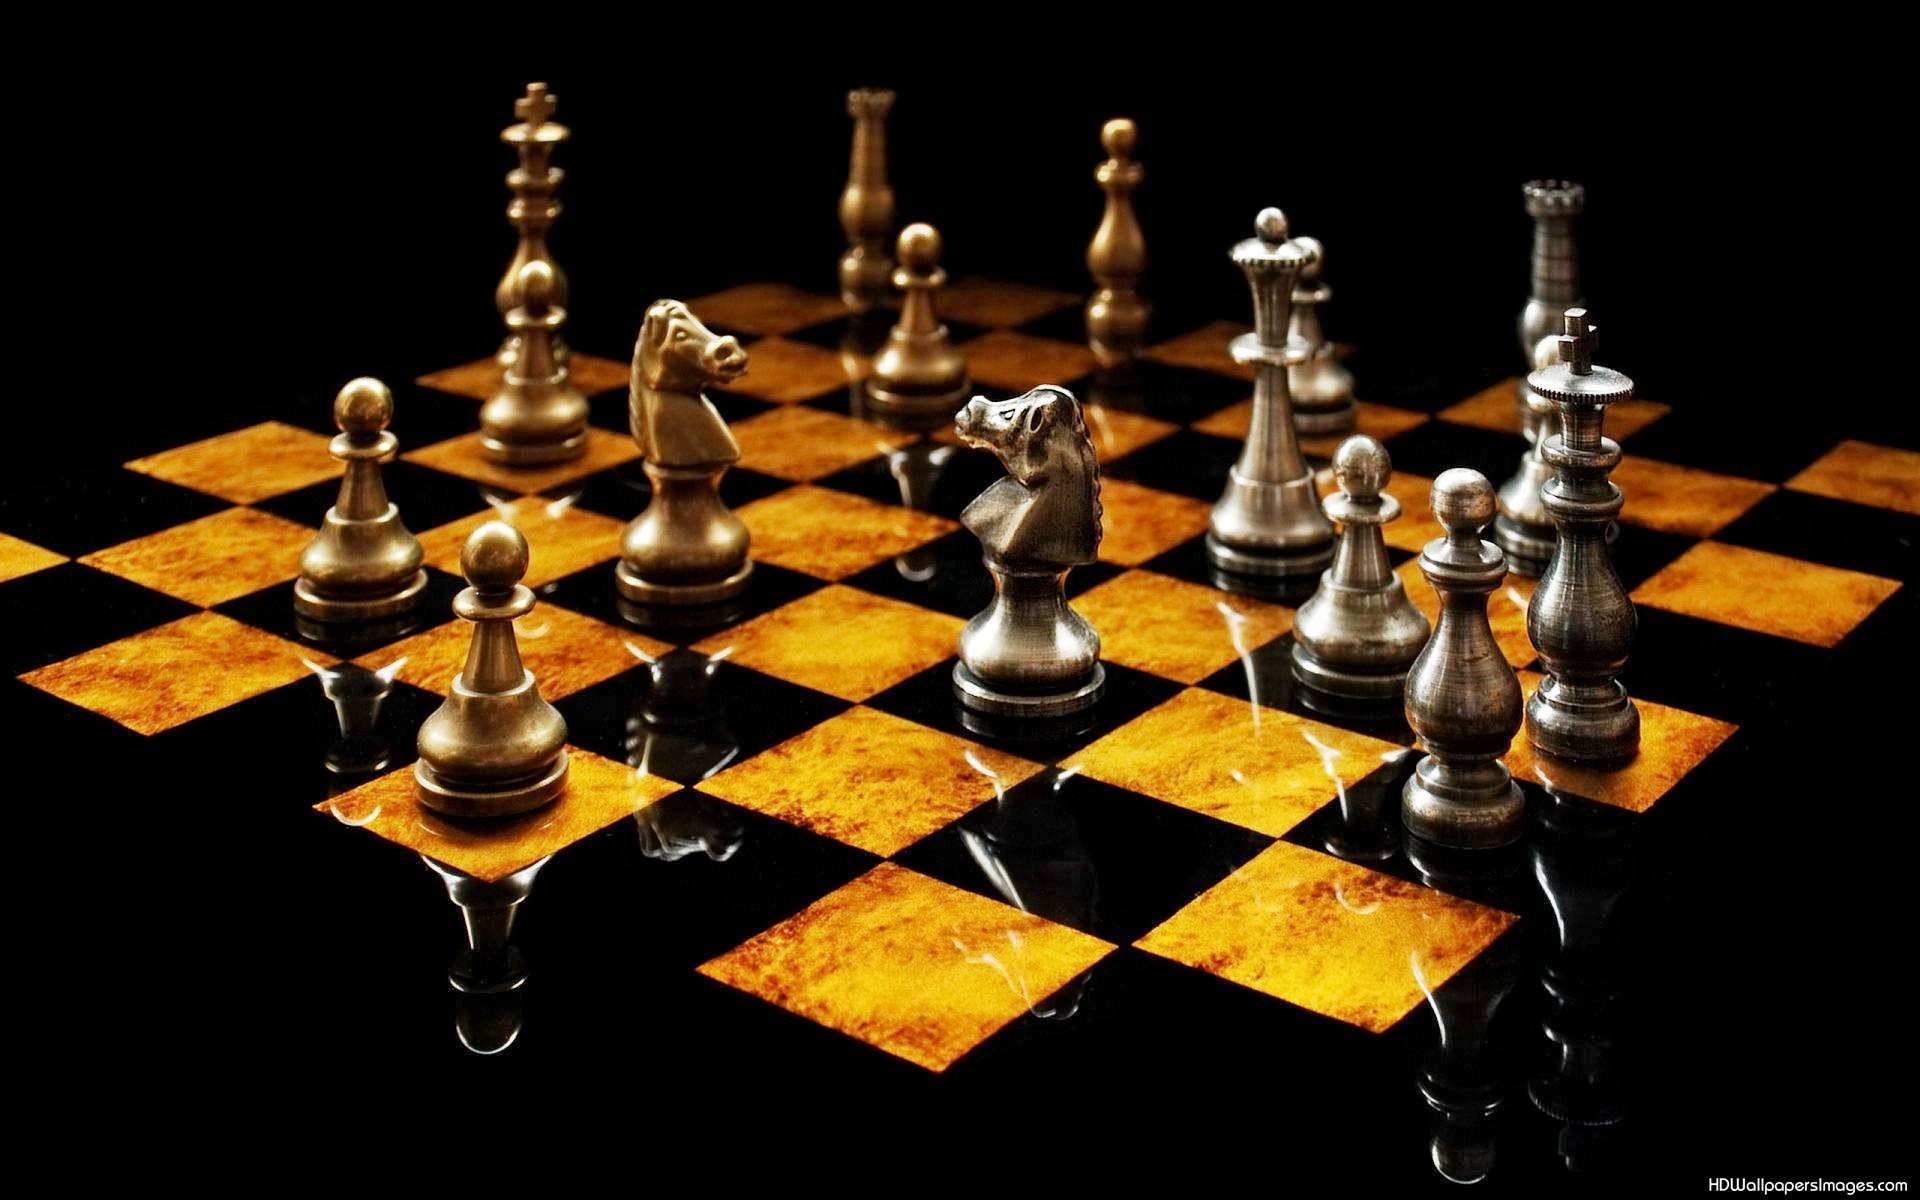 schachtapete,indoor spiele und sport,schachbrett,schach,spiele,brettspiel